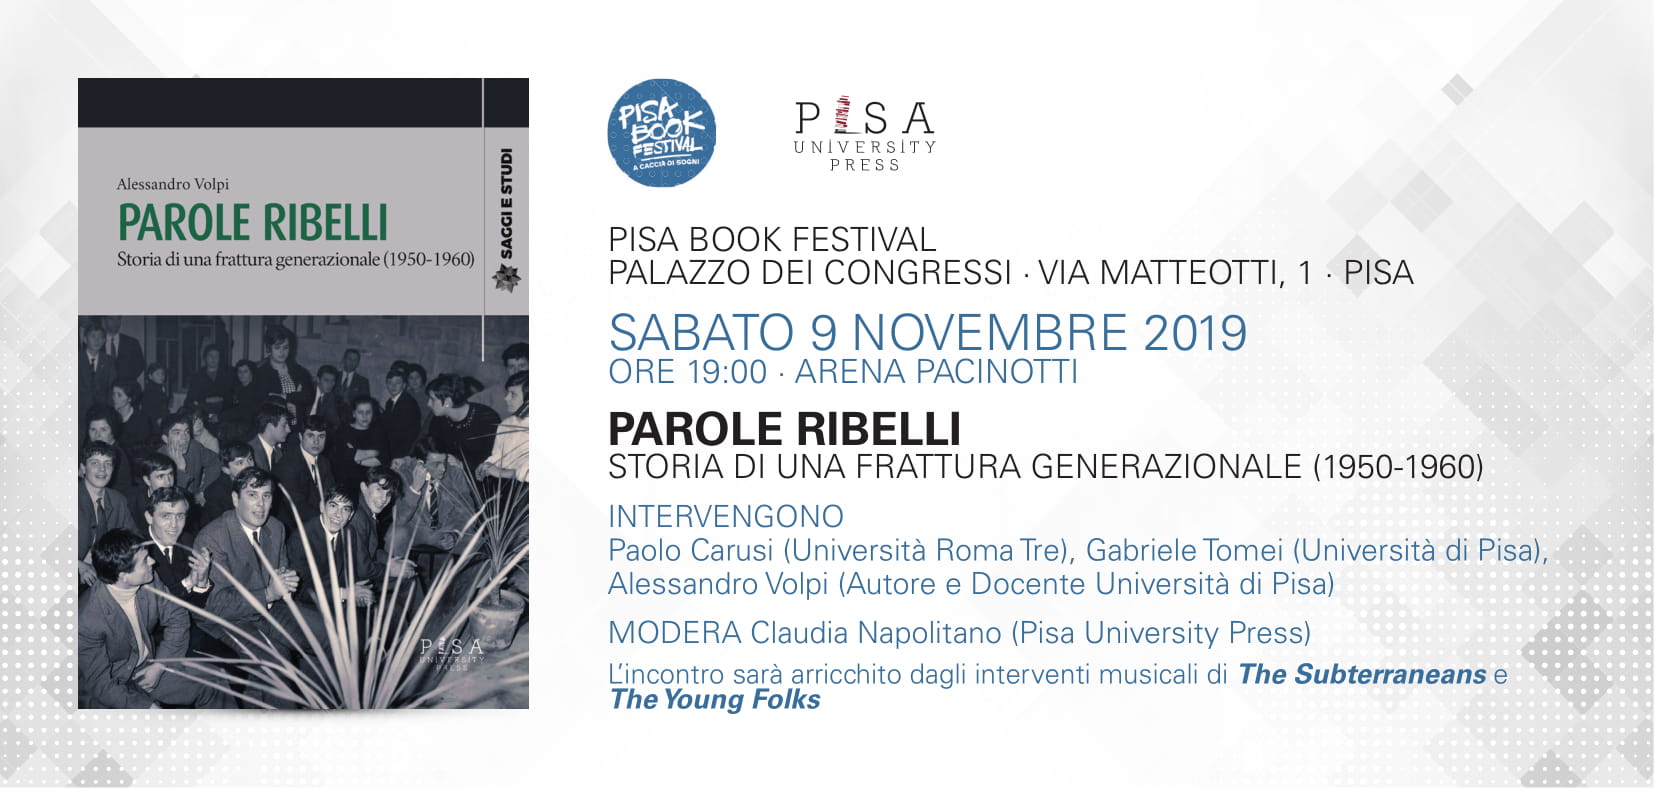 Invito PBF2019 - Parole Ribelli-1.jpg